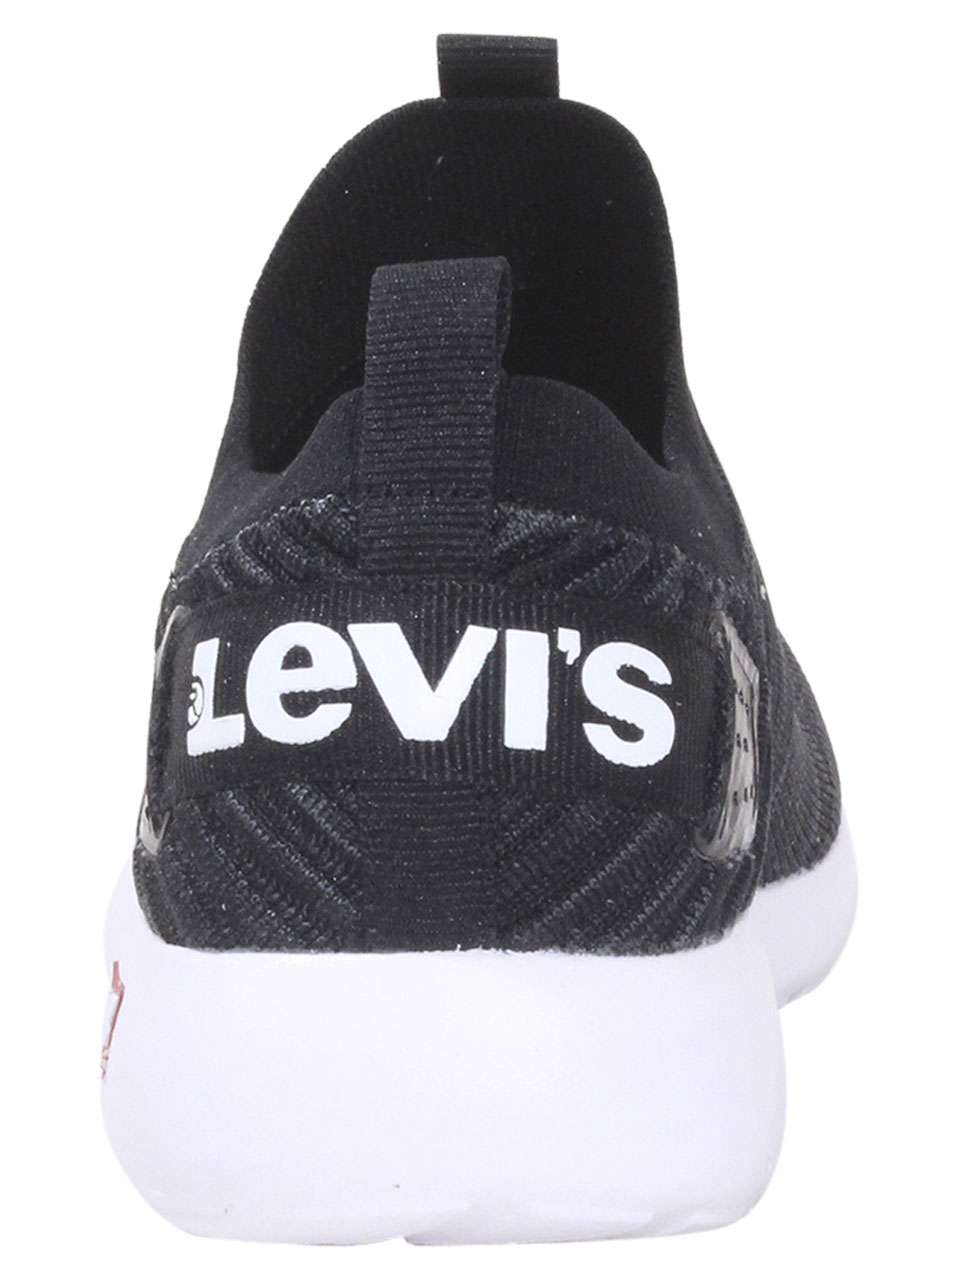 Levis Men's Drifter-KT-Logo Sneakers Slip-On Knit Black/Charcoal Sz. 12  519699 